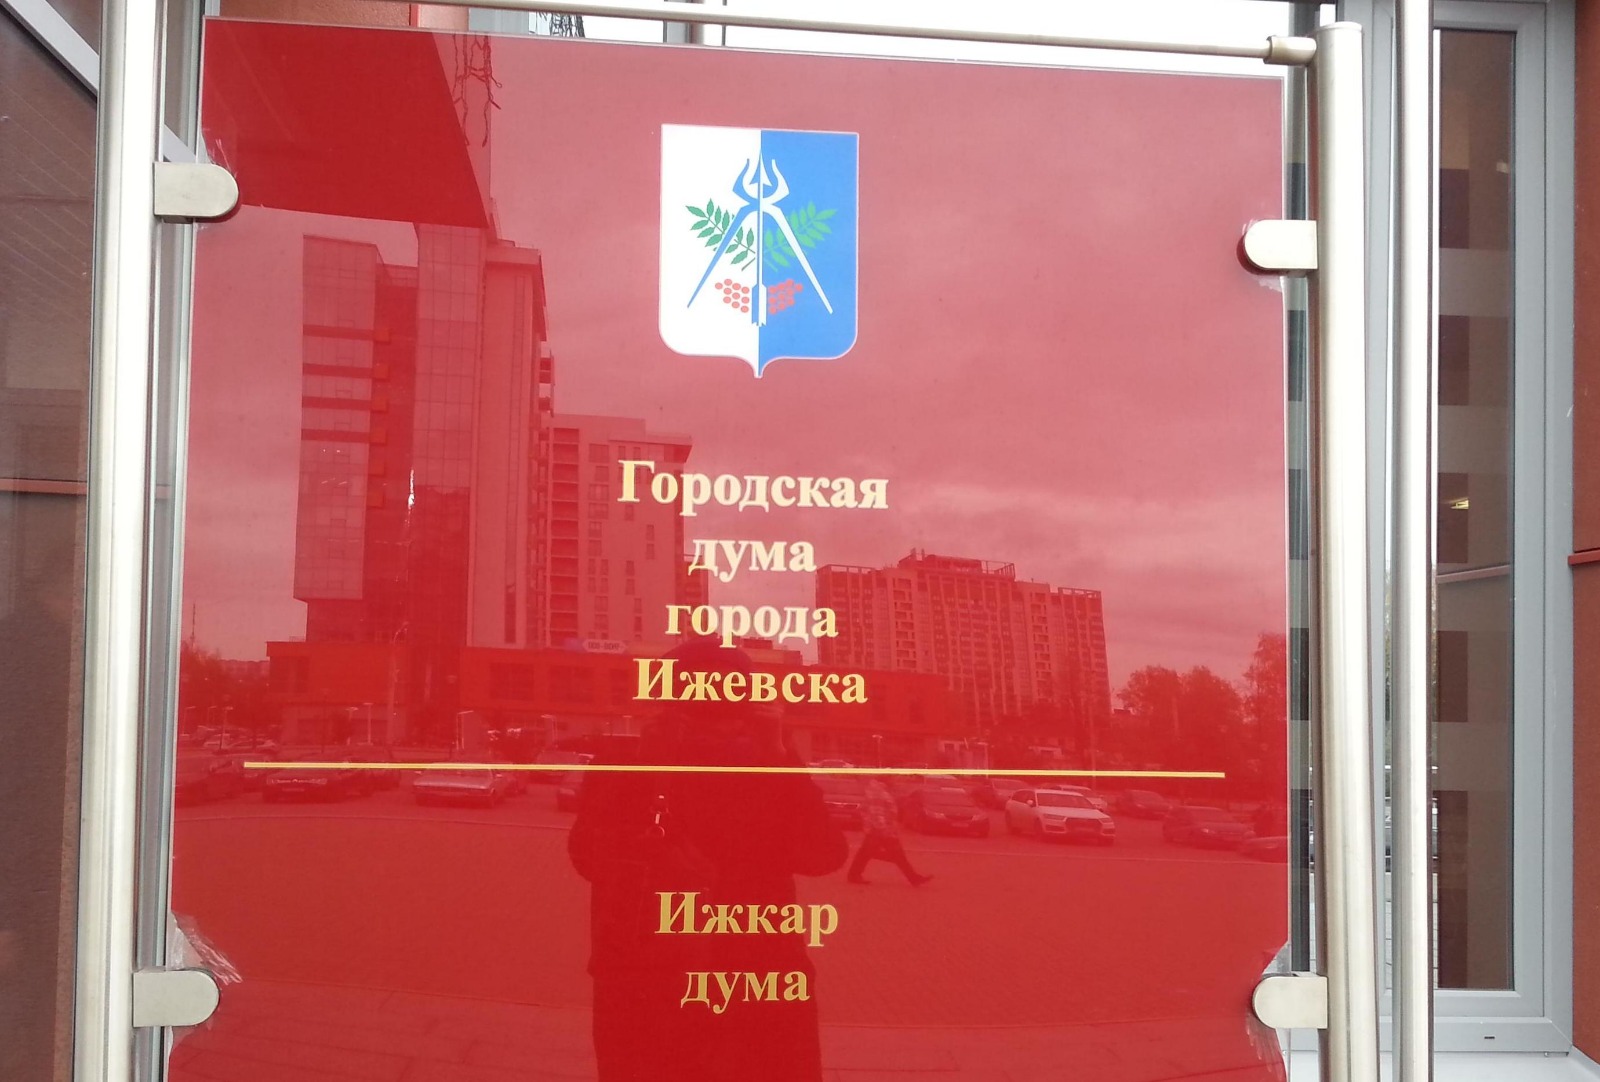 Президиум Городской думы Ижевска утвердил дату проведения бюджетной сессии.